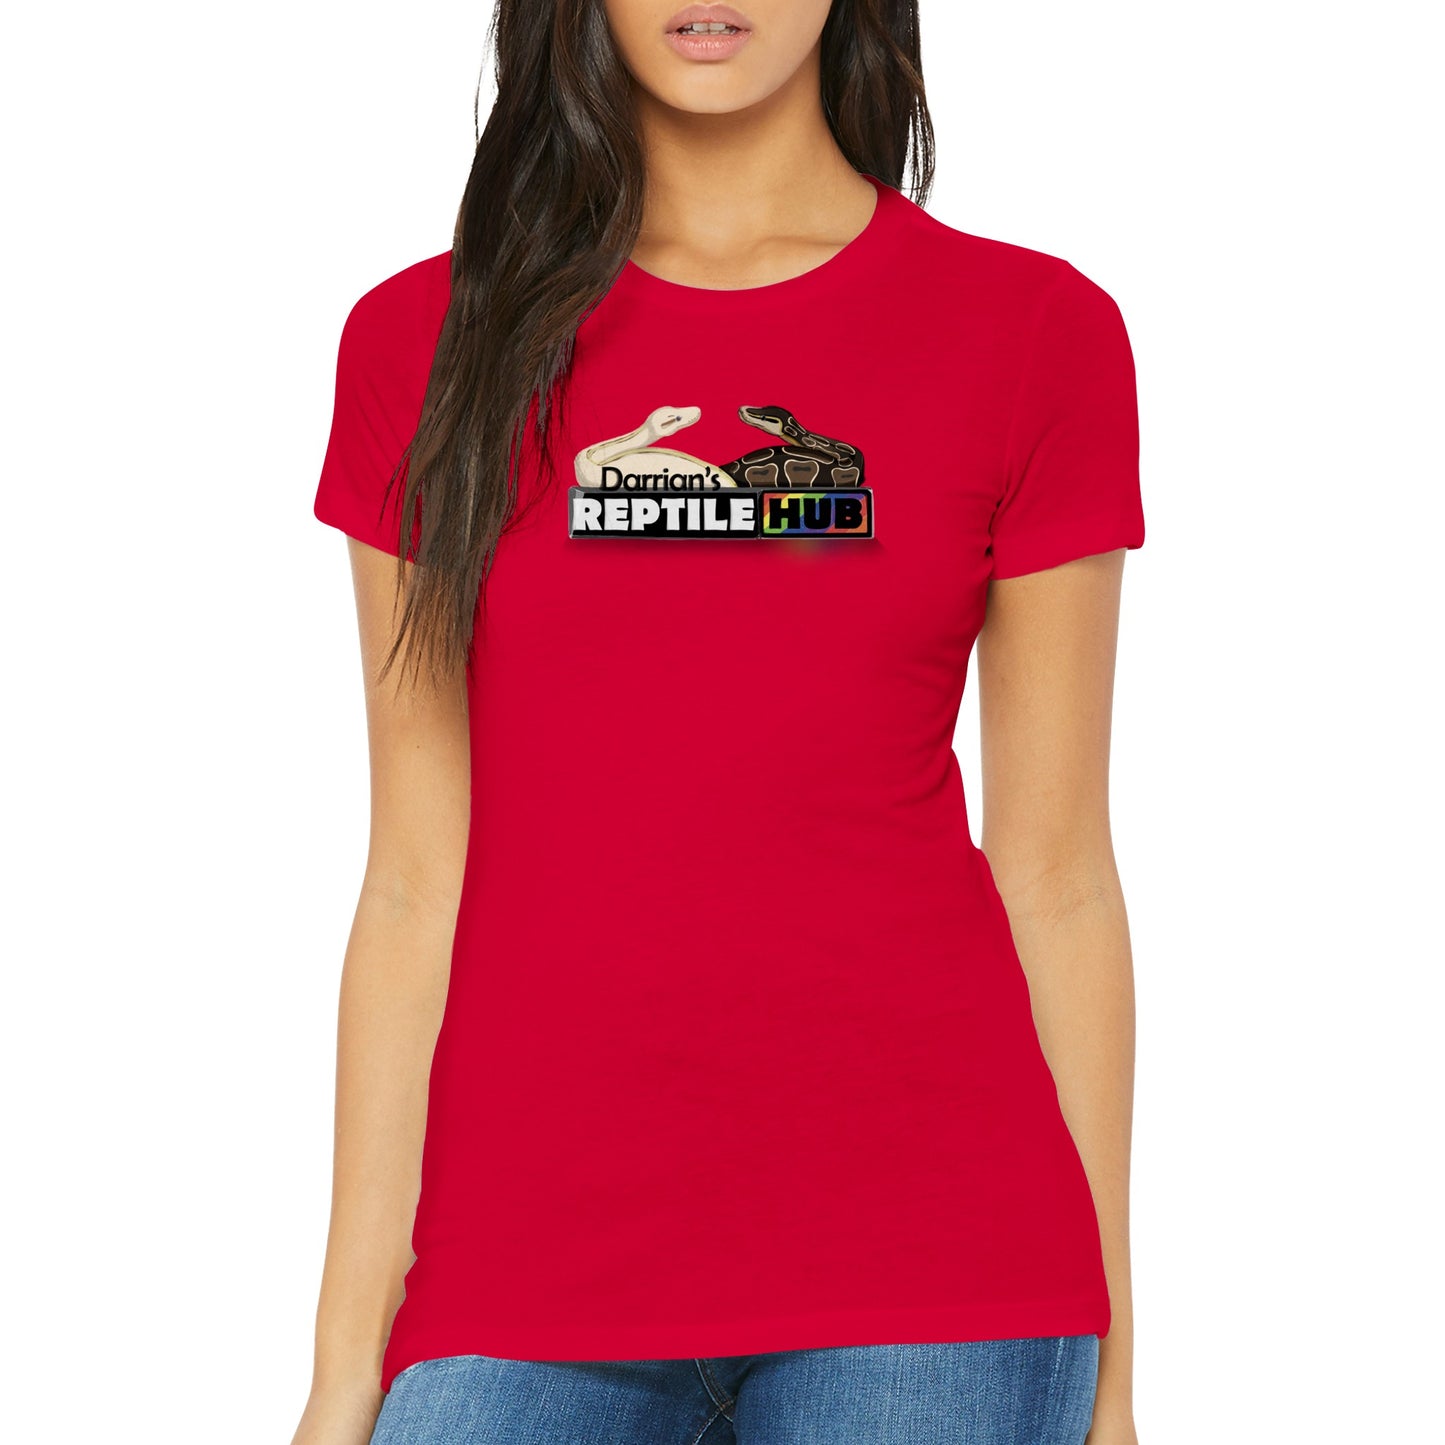 Darrian's Reptile Hub - Premium Womens Crewneck T-shirt